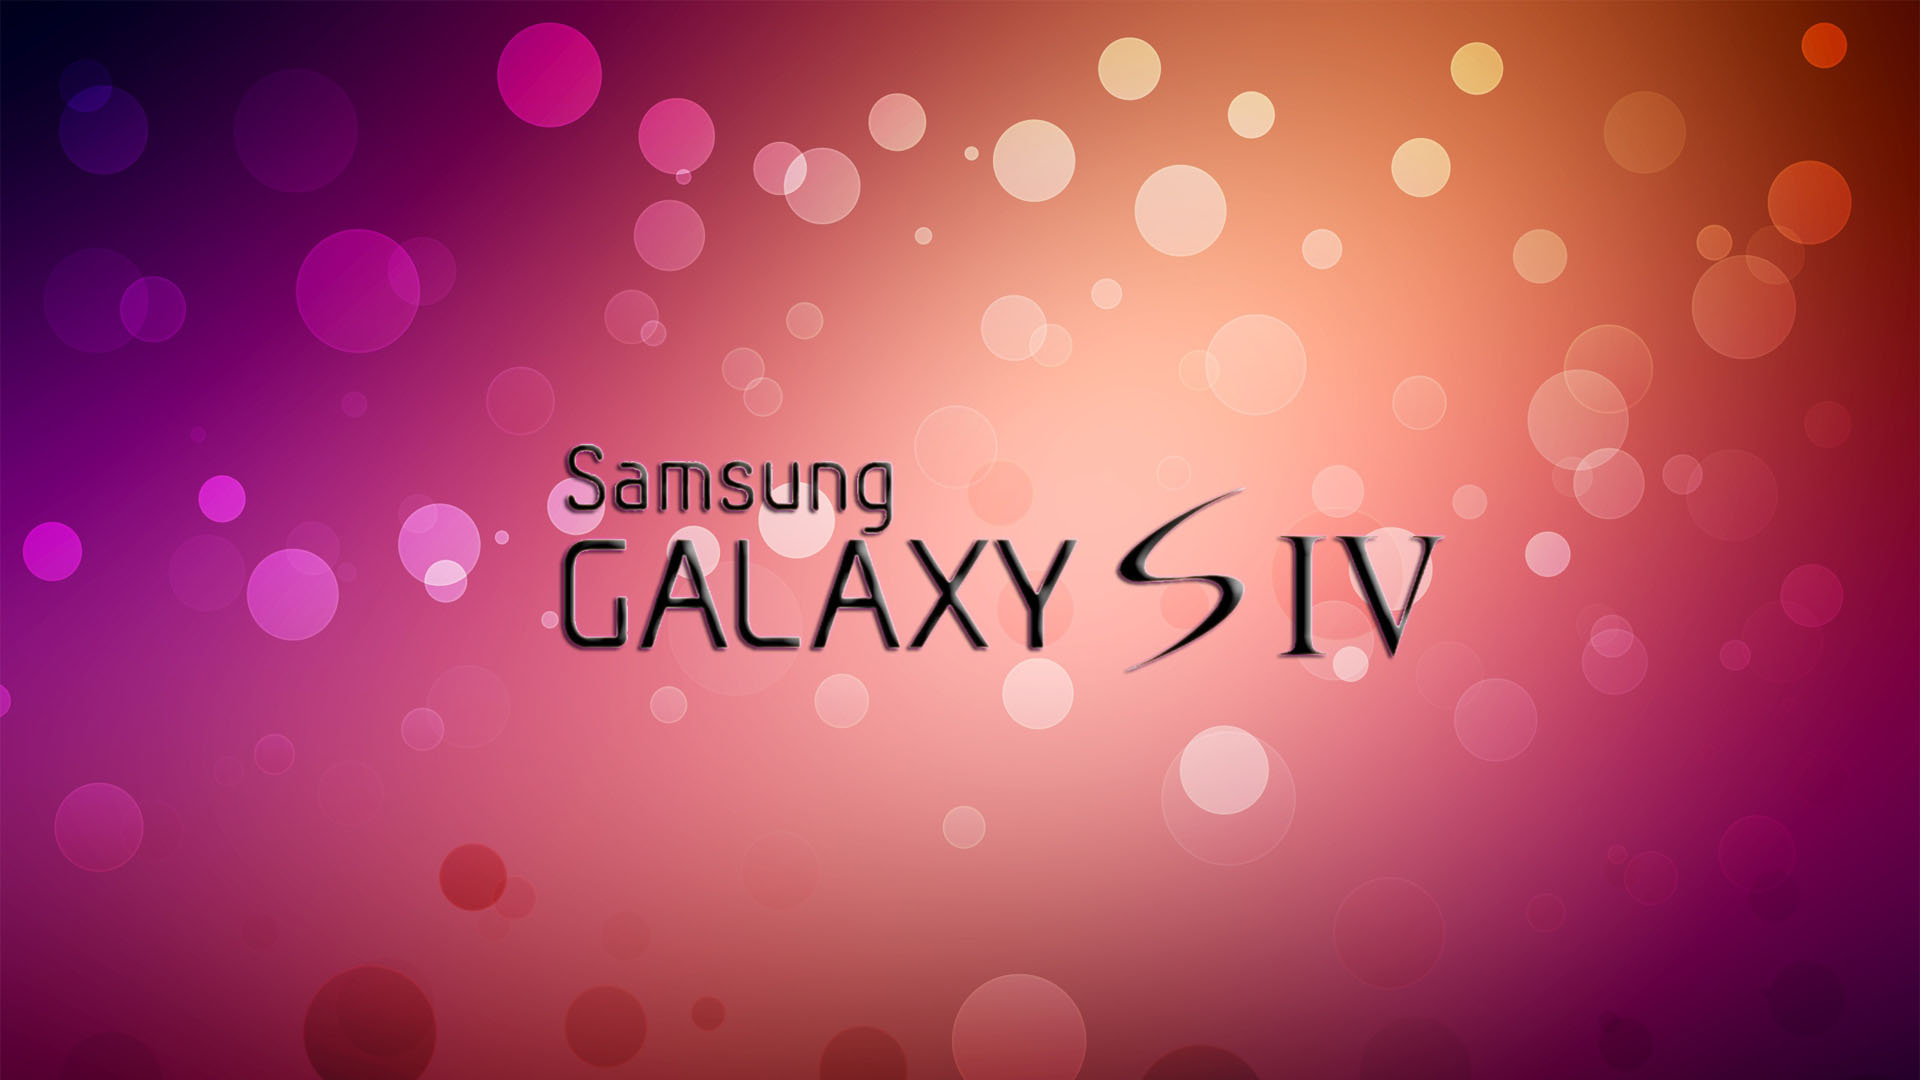 samsung-galaxy-s4-logo-wallpaper.jpg